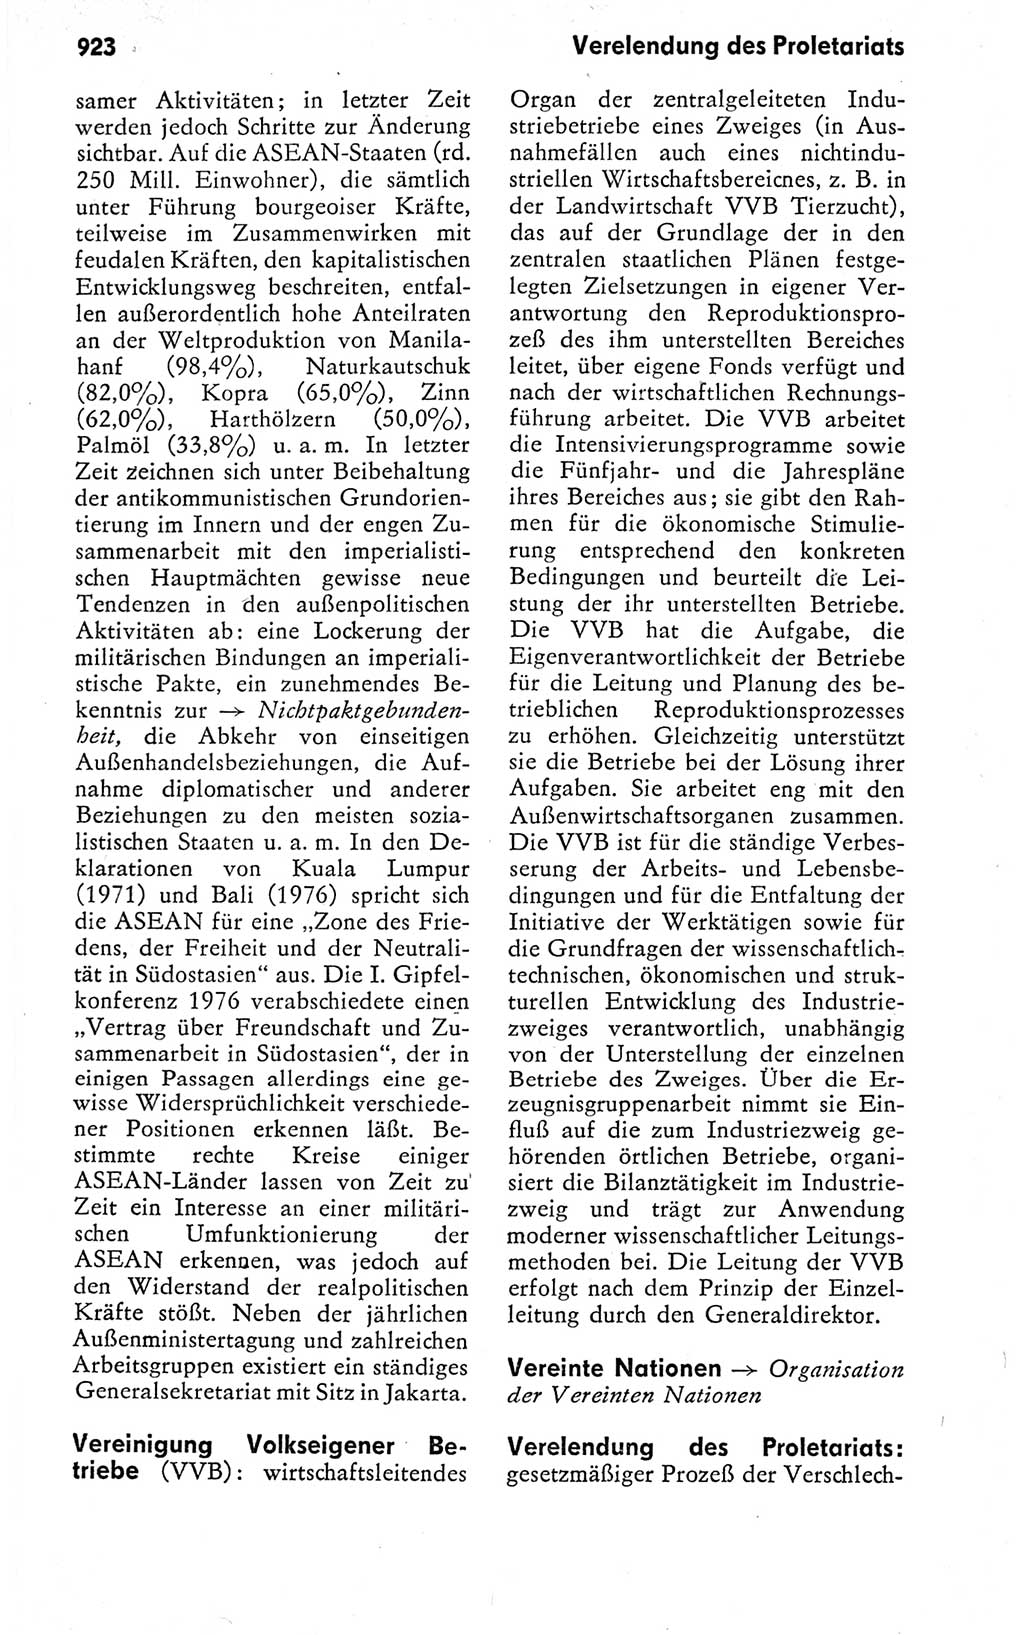 Kleines politisches Wörterbuch [Deutsche Demokratische Republik (DDR)] 1978, Seite 923 (Kl. pol. Wb. DDR 1978, S. 923)